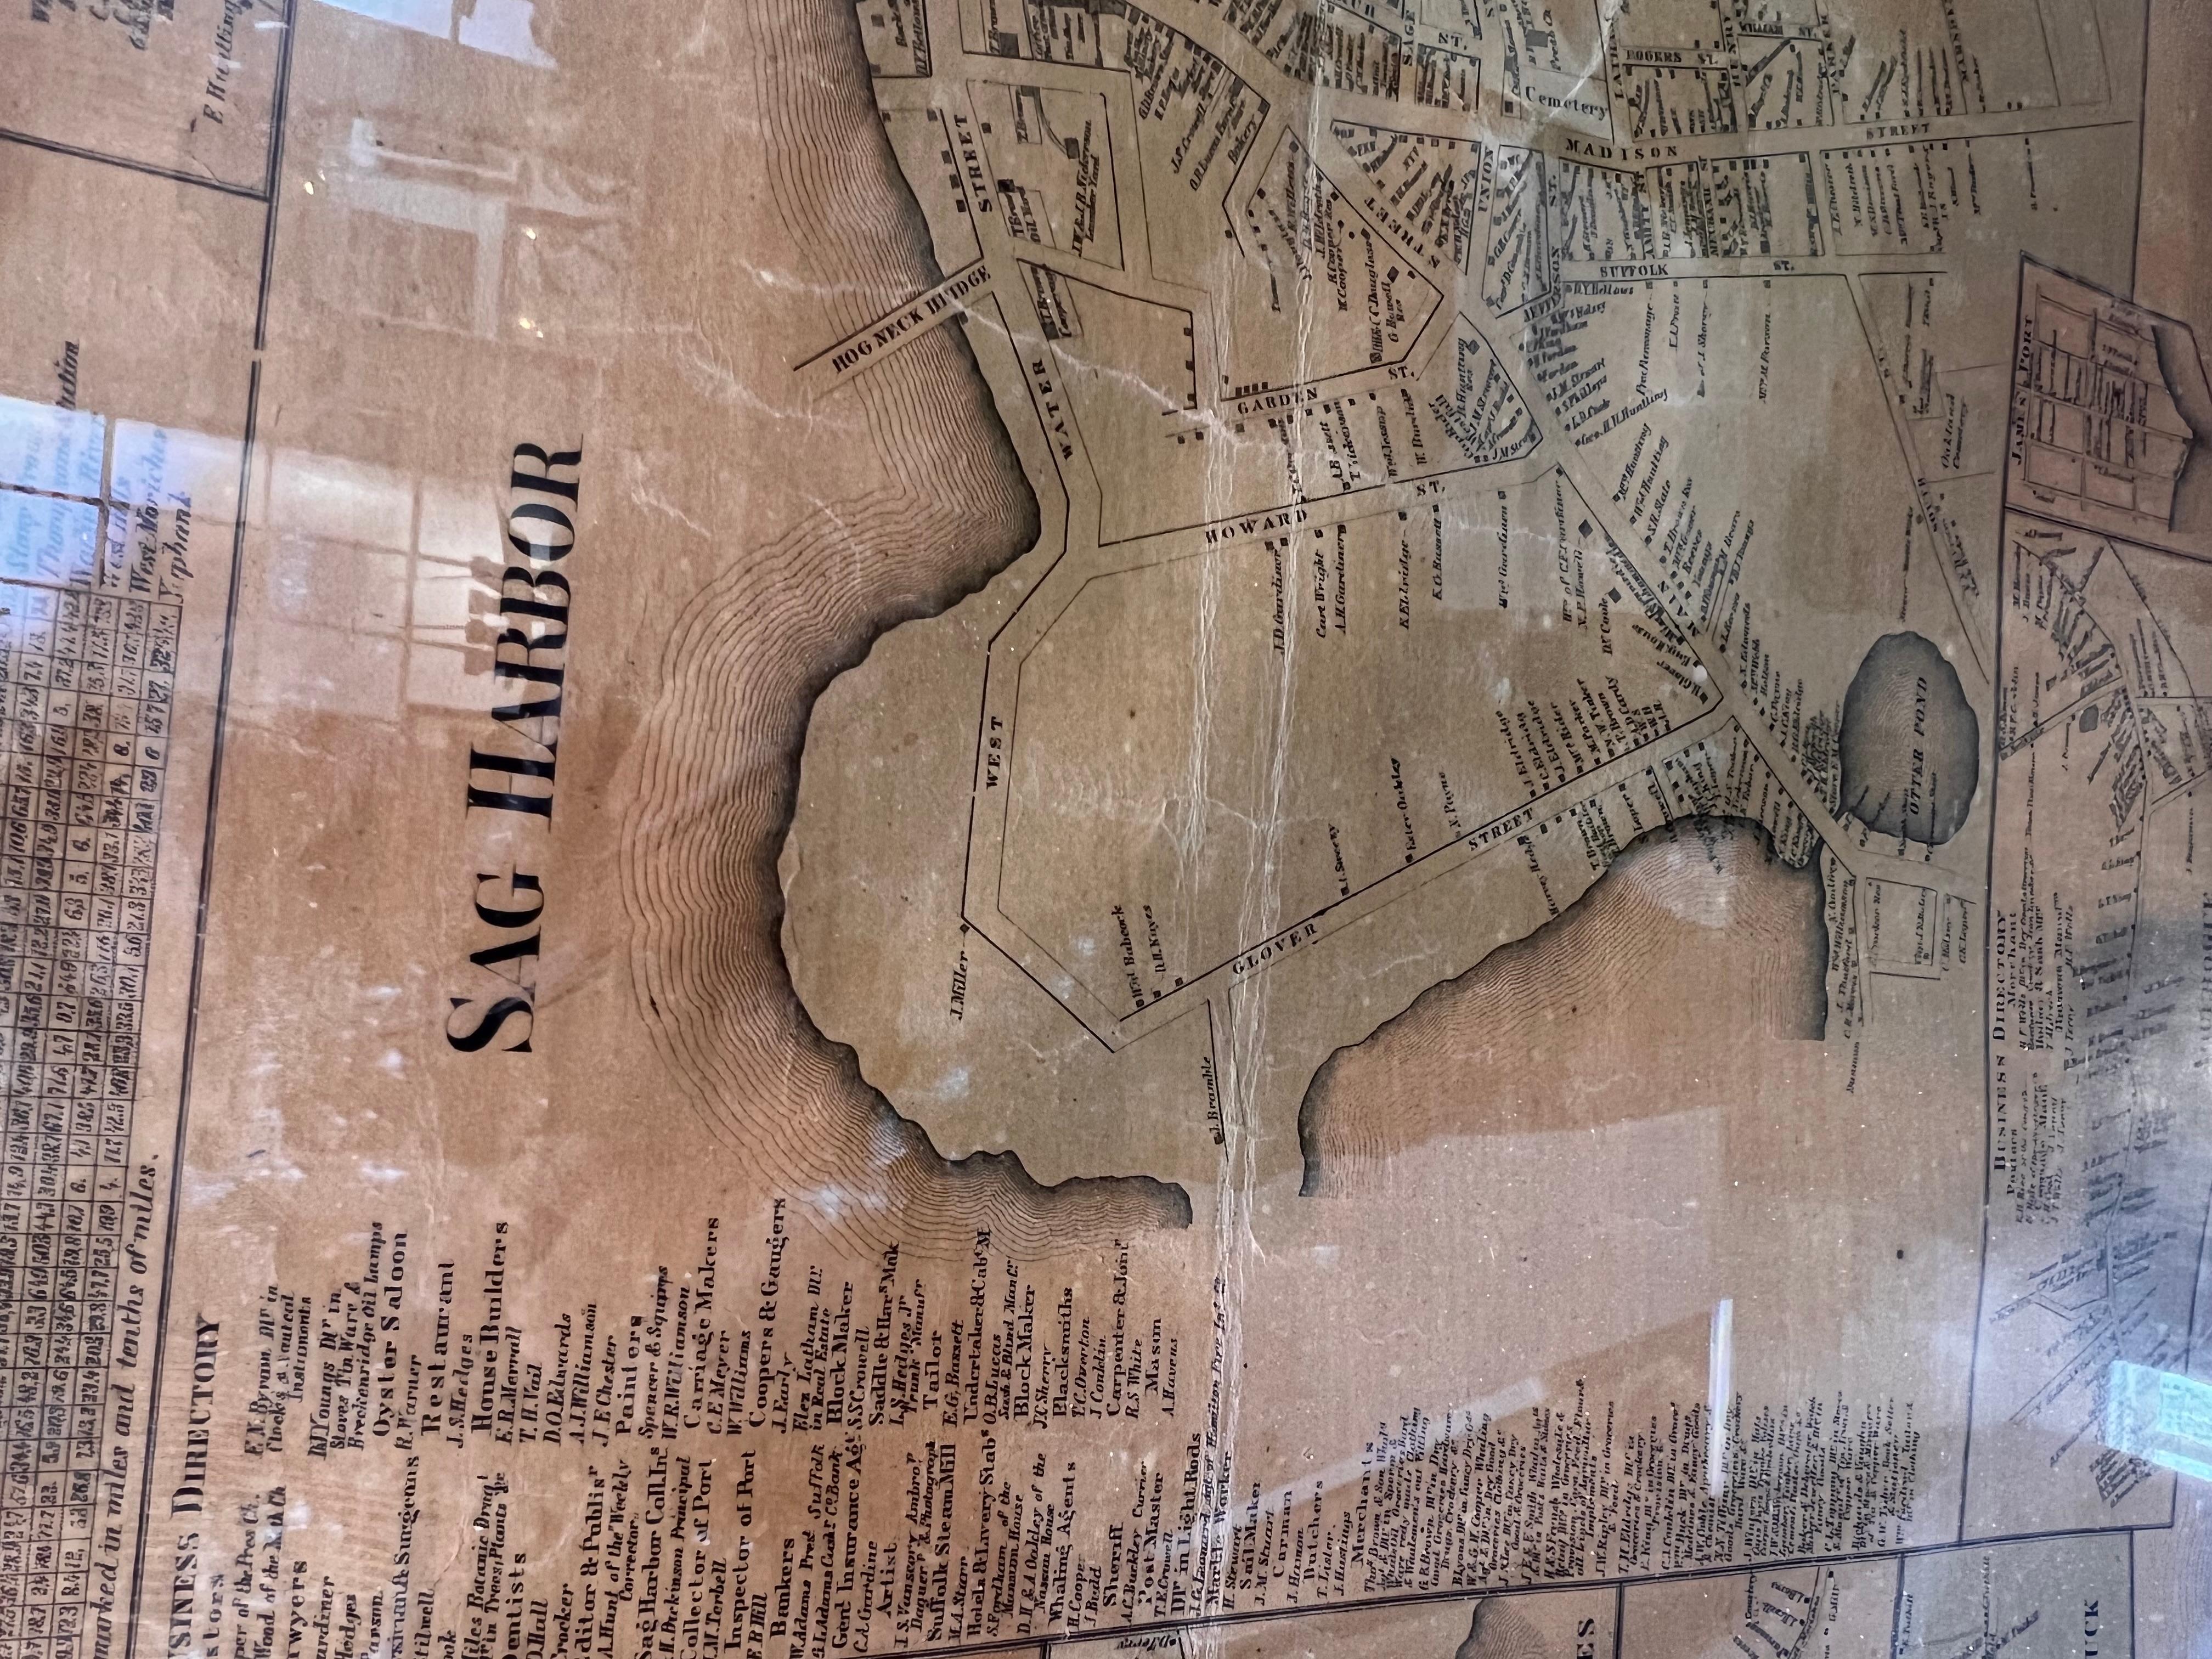 Ein gerahmter Fund in Museumsqualität. Diese große Wandkarte stammt aus der Mitte des 18. Jahrhunderts. Detaillierte Inspektionskarten von Sag Harbor, East Hampton, Amagansett, Shelter Island und den meisten Orten auf Long Island. Sie enthält auch